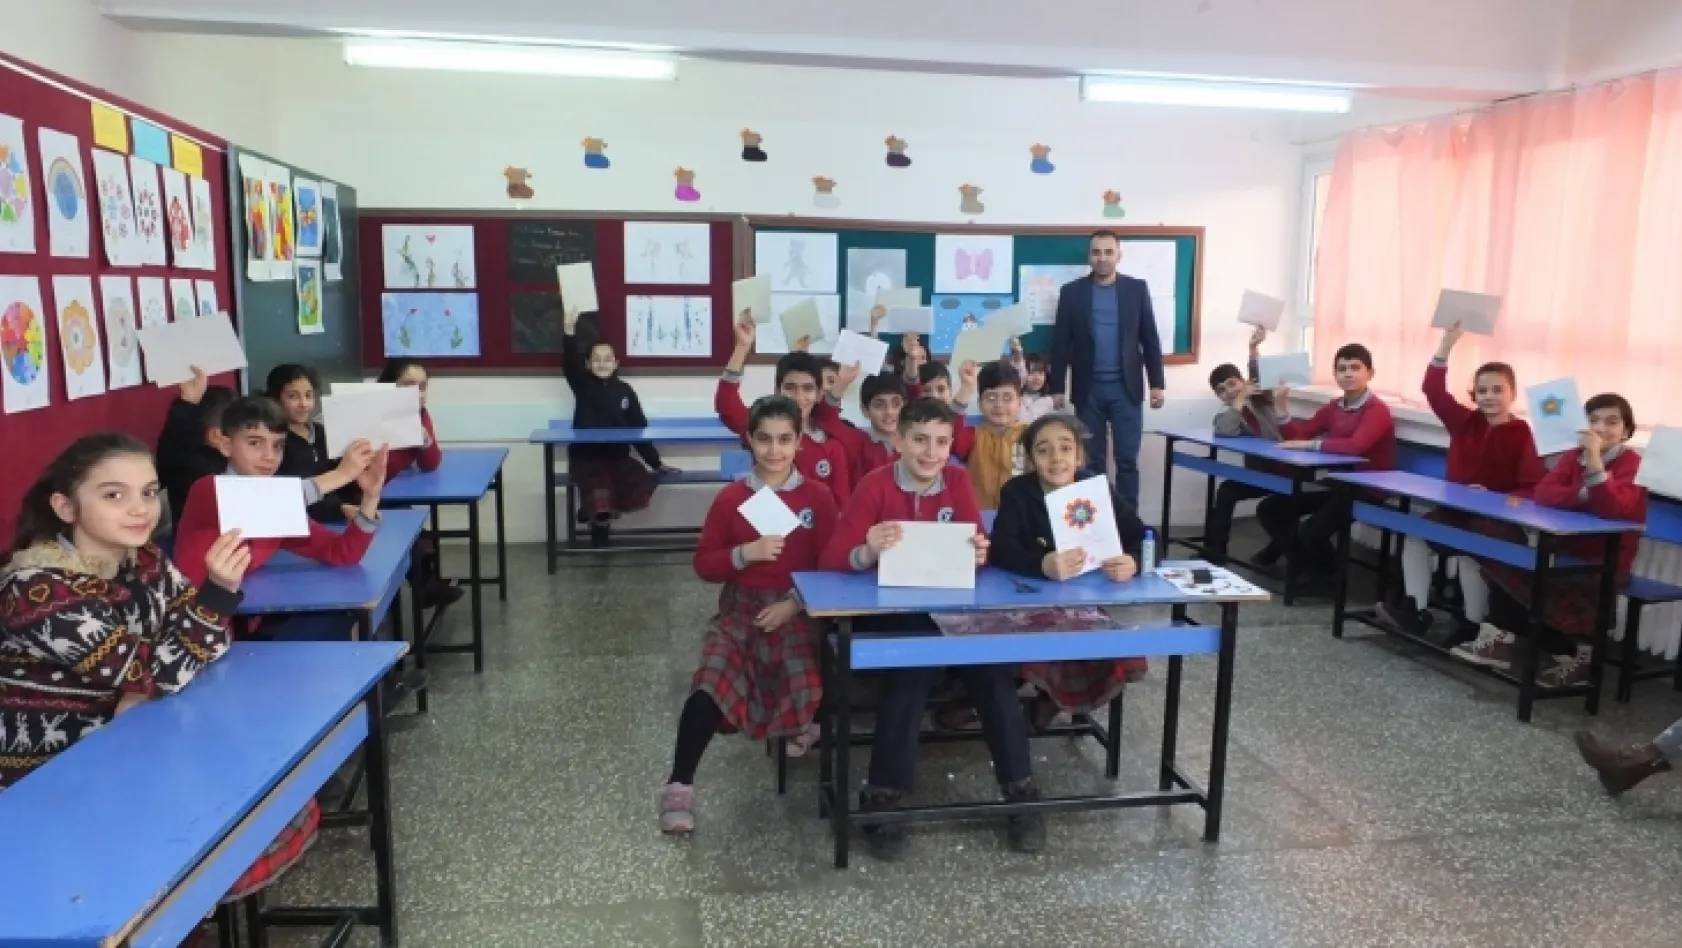 Keban'da öğrenciler kartpostal hazırladı